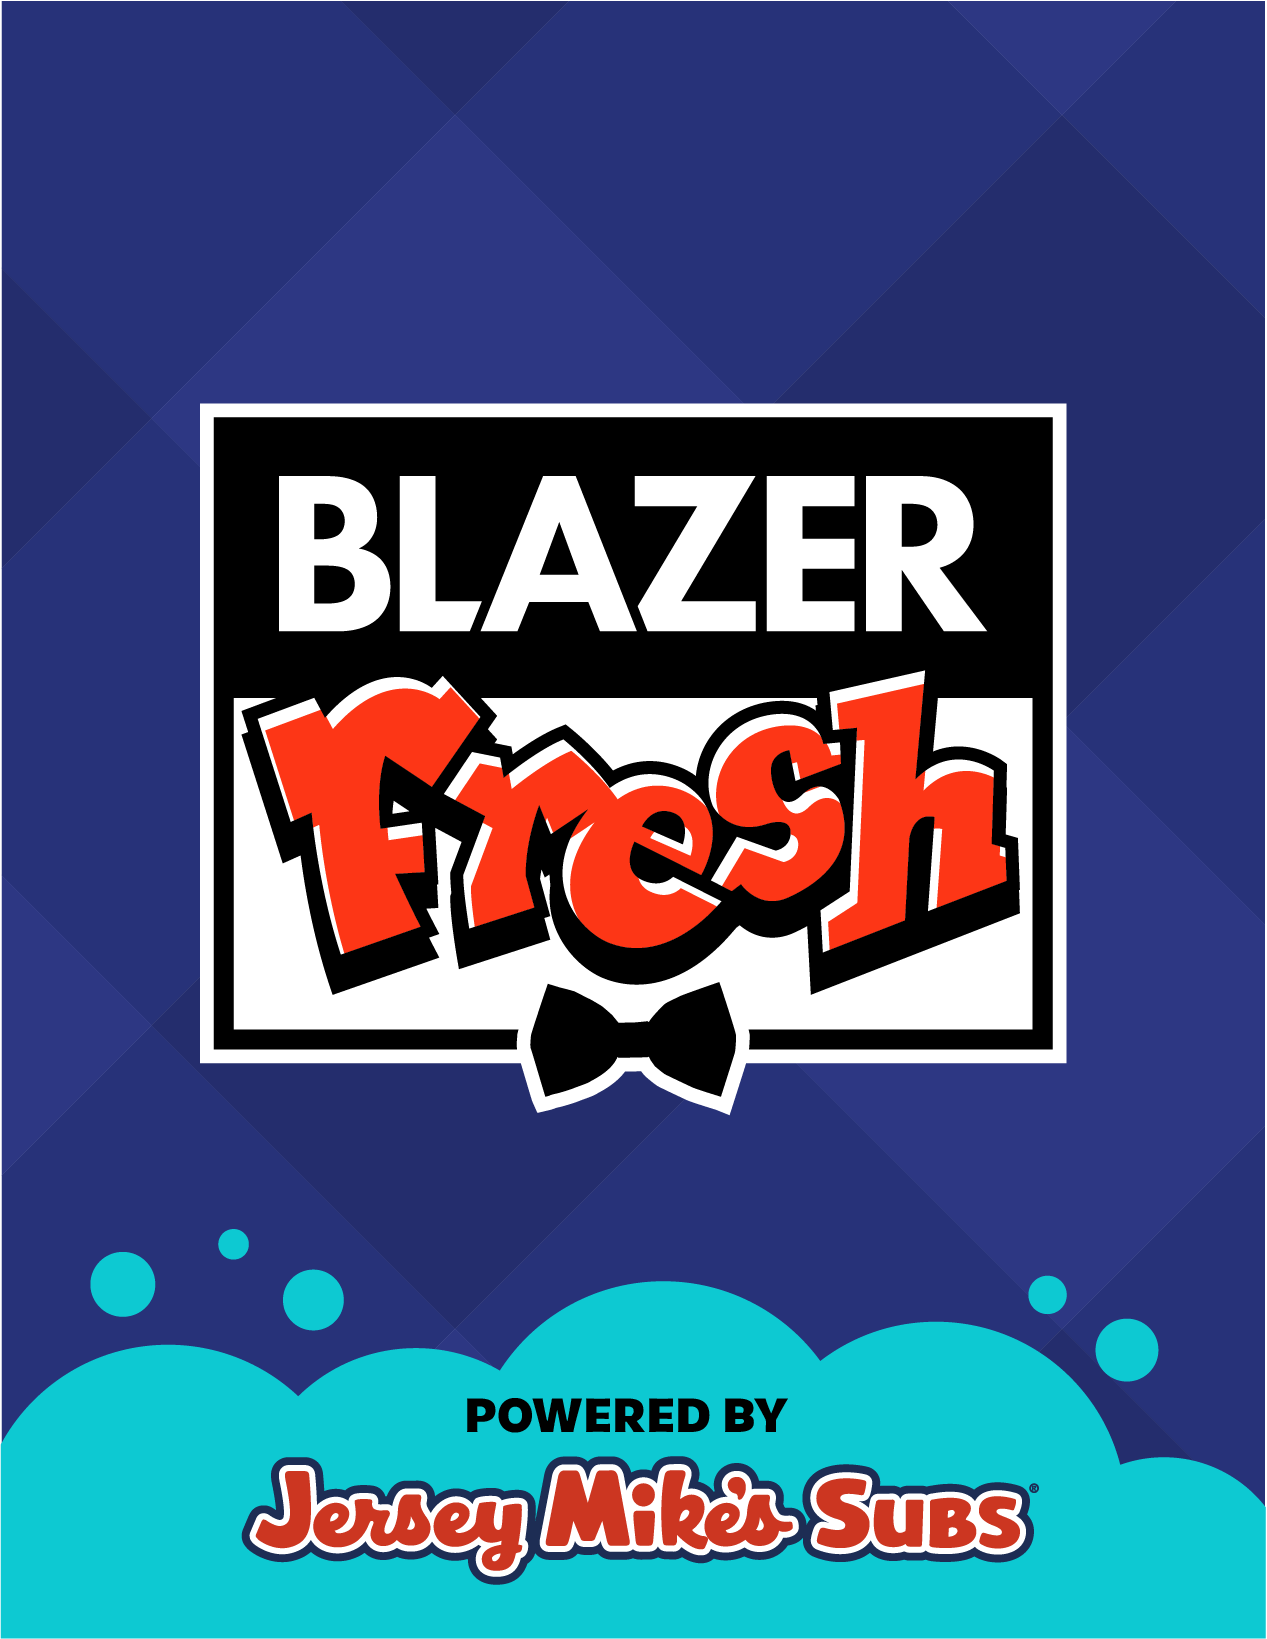 Blazer Fresh